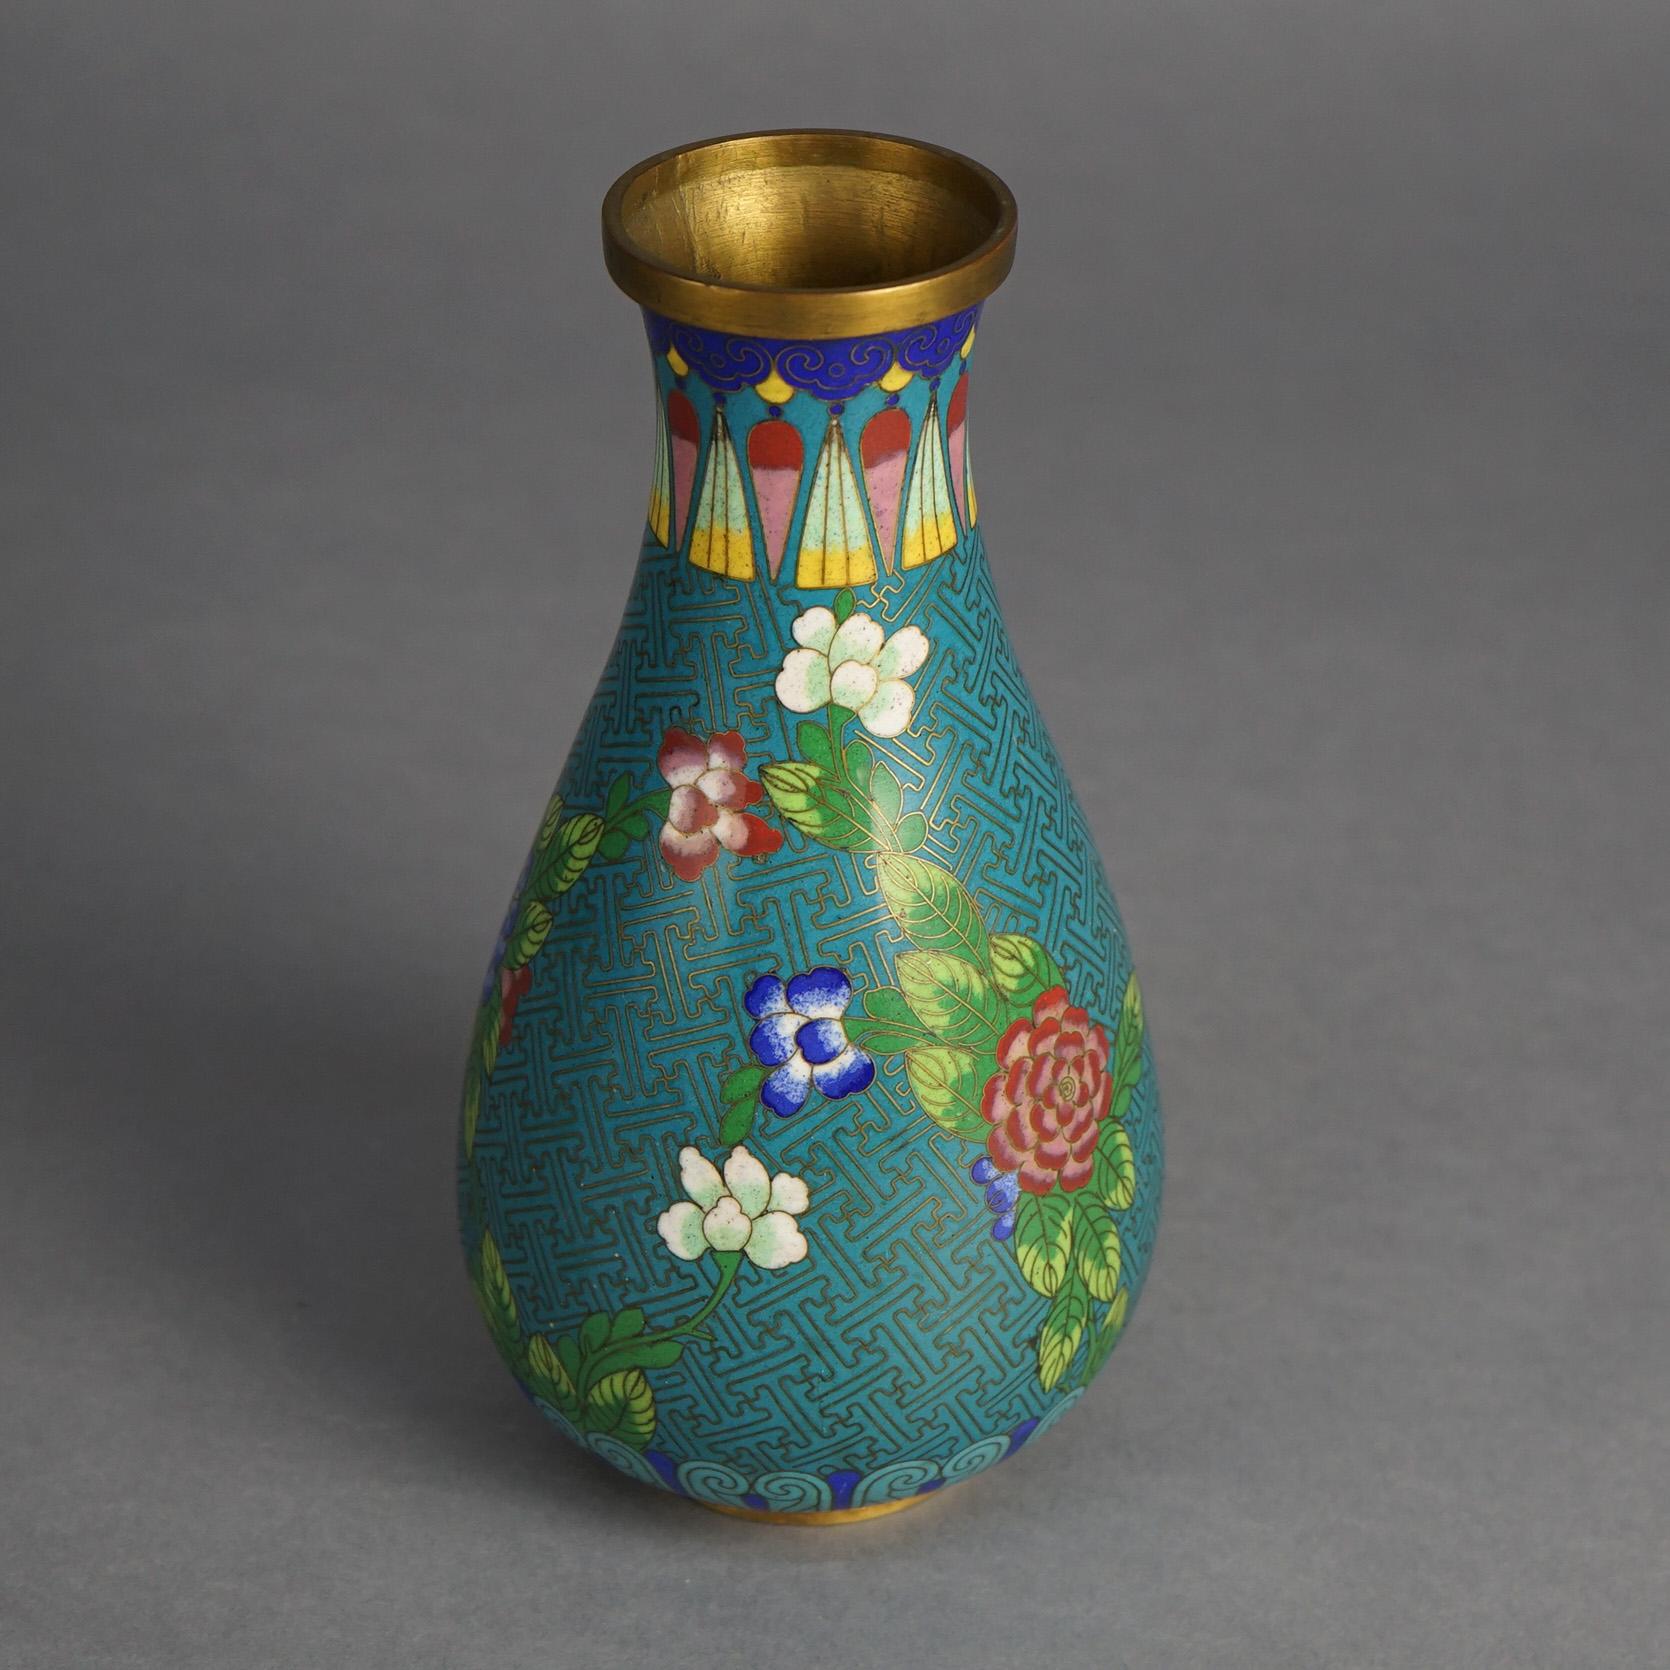 Antike japanische Meiji-Cloisonné-Vase mit Blumen emailliert, Meiji-Cloisonné, um 1920

Maße: 9''H x 4,5''B x 4,5''D